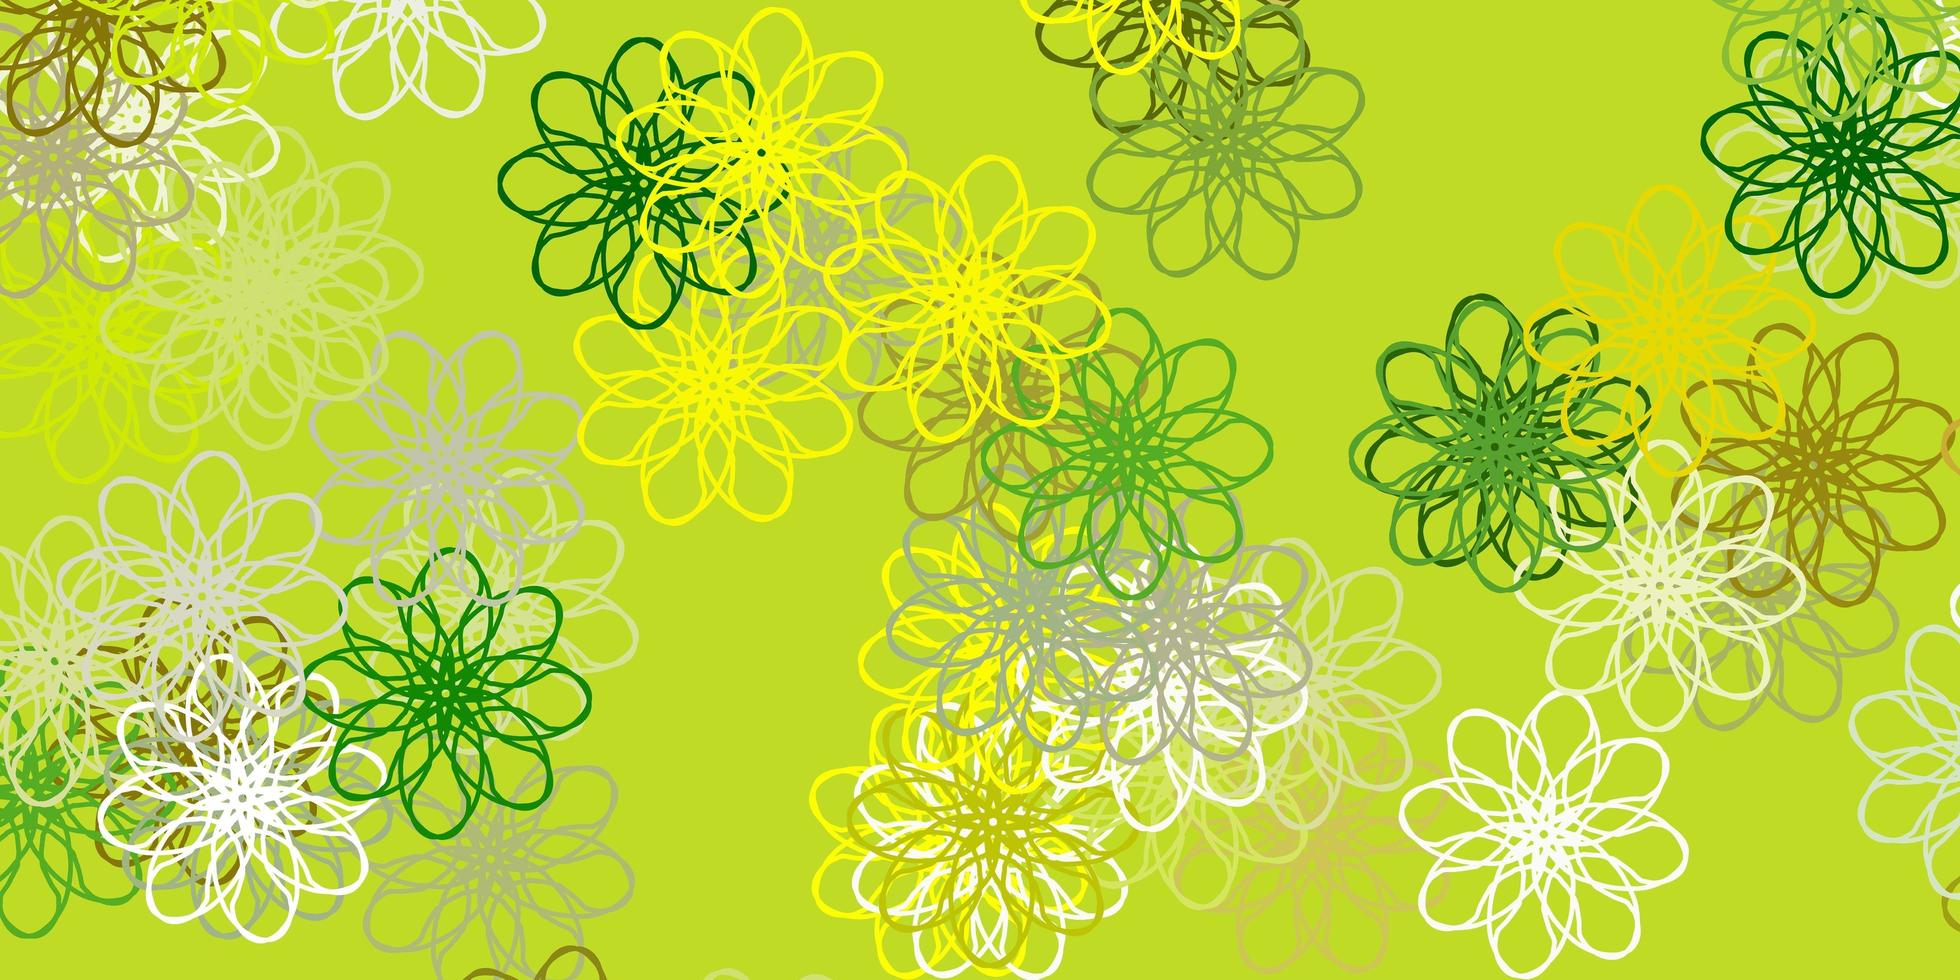 ljusgrön, gul vektor naturlig layout med blommor.